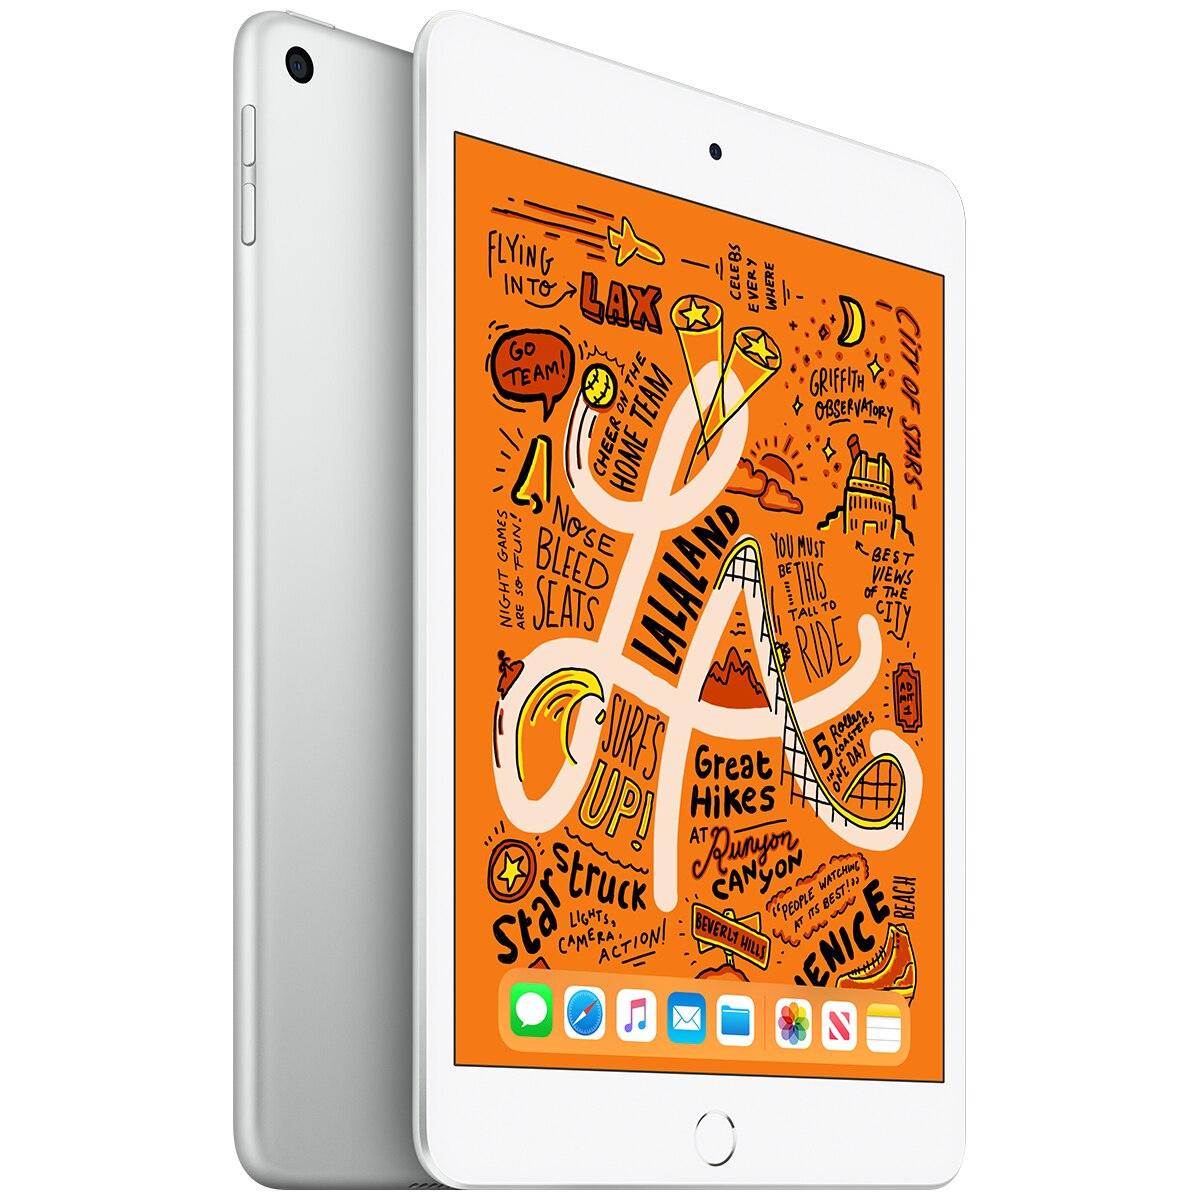 iPad Mini MUU52X/A iPad mini Wi-Fi 256GB - Silver